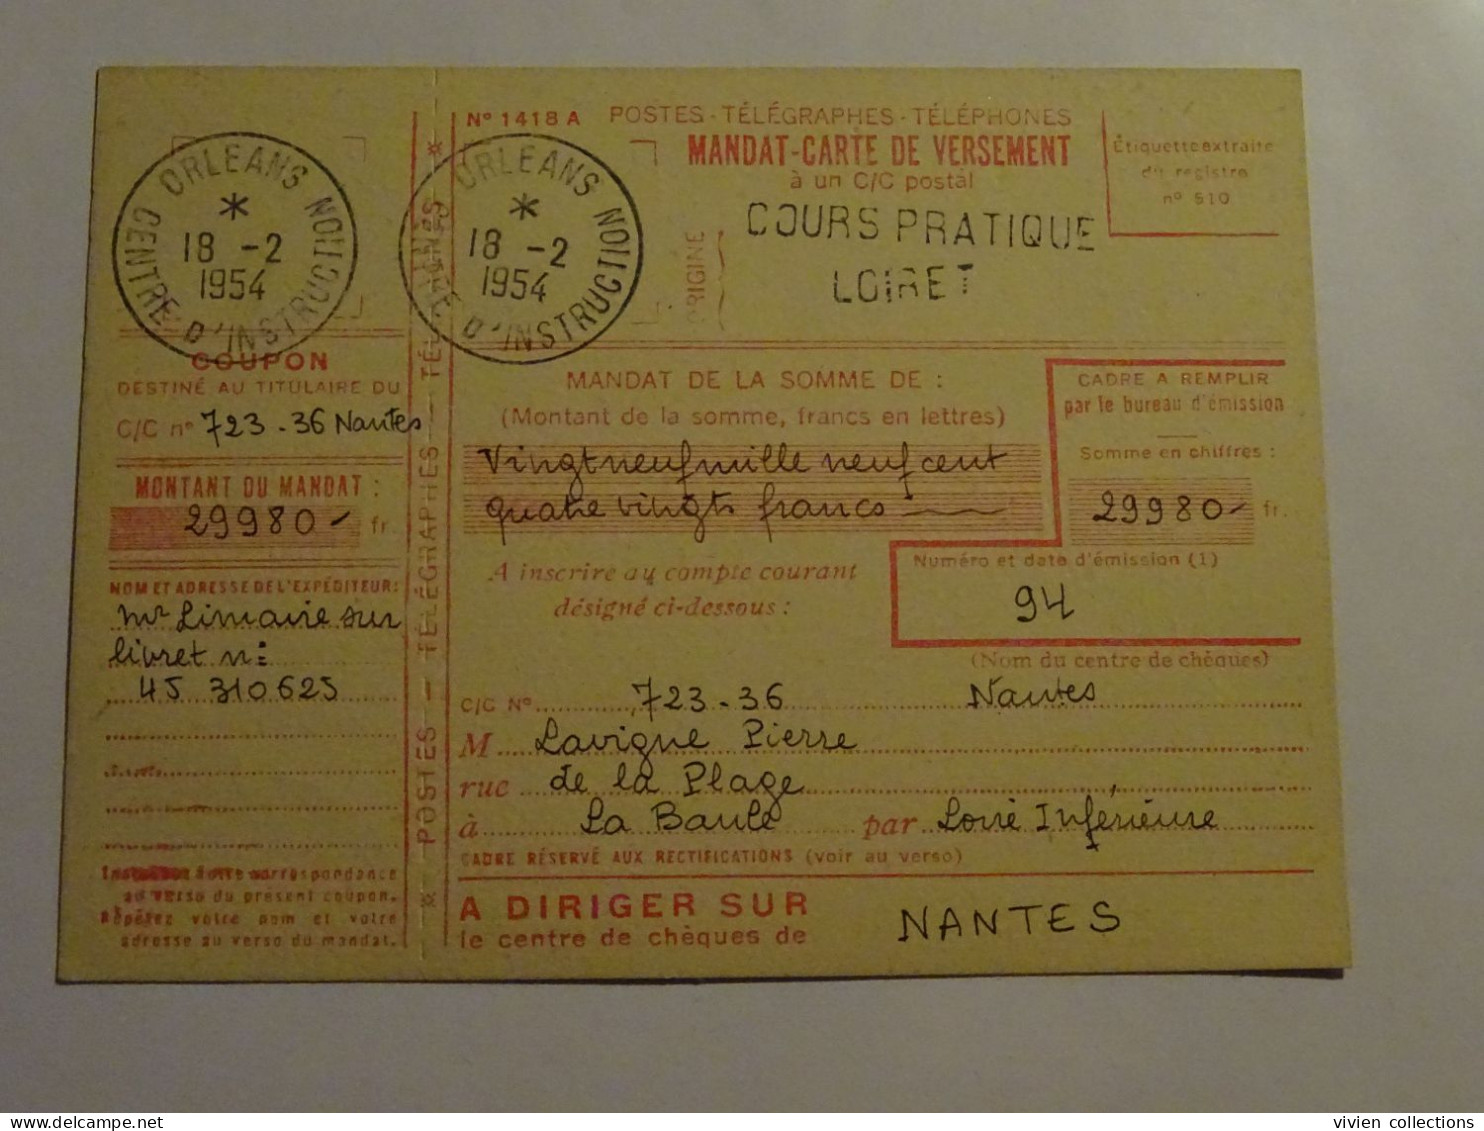 France cours pratique d'instruction Orléans 1954 demande et remboursement par mandat ébéniste pour La Baule et Montargis